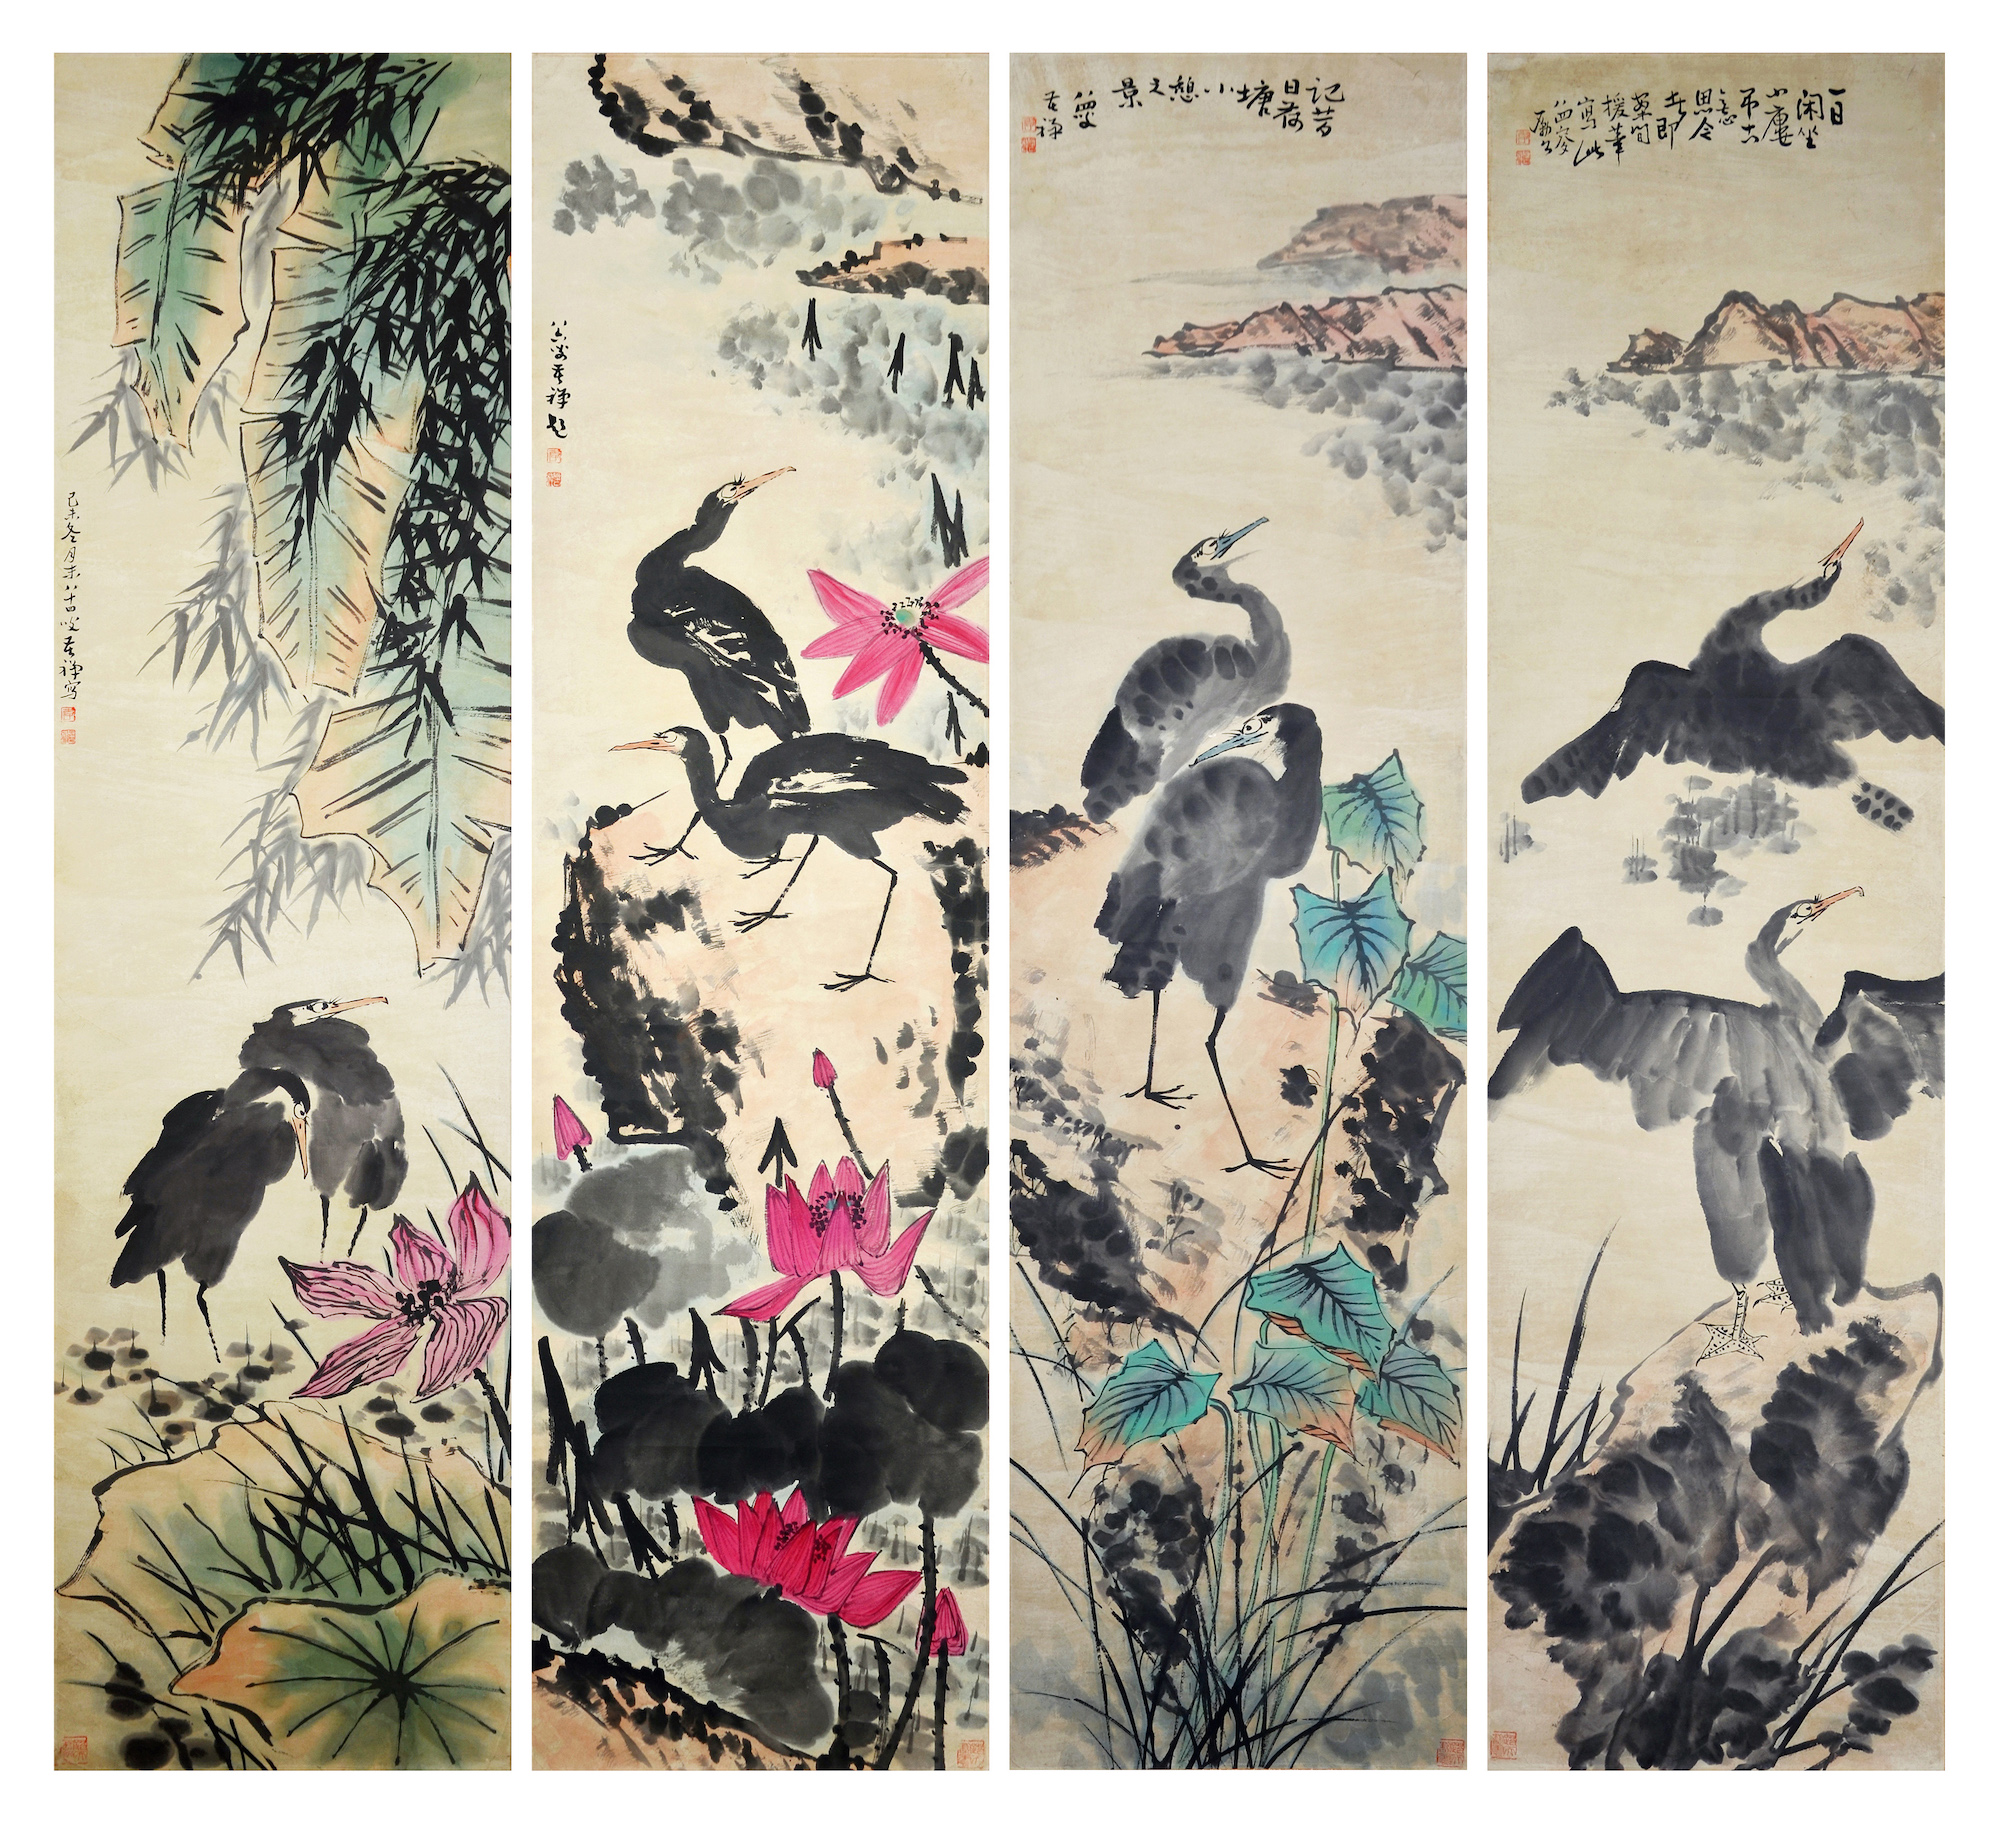 Cranes by Lu Kuchan, 4 panels. Gianguan Auctions, June 17th, 2019.